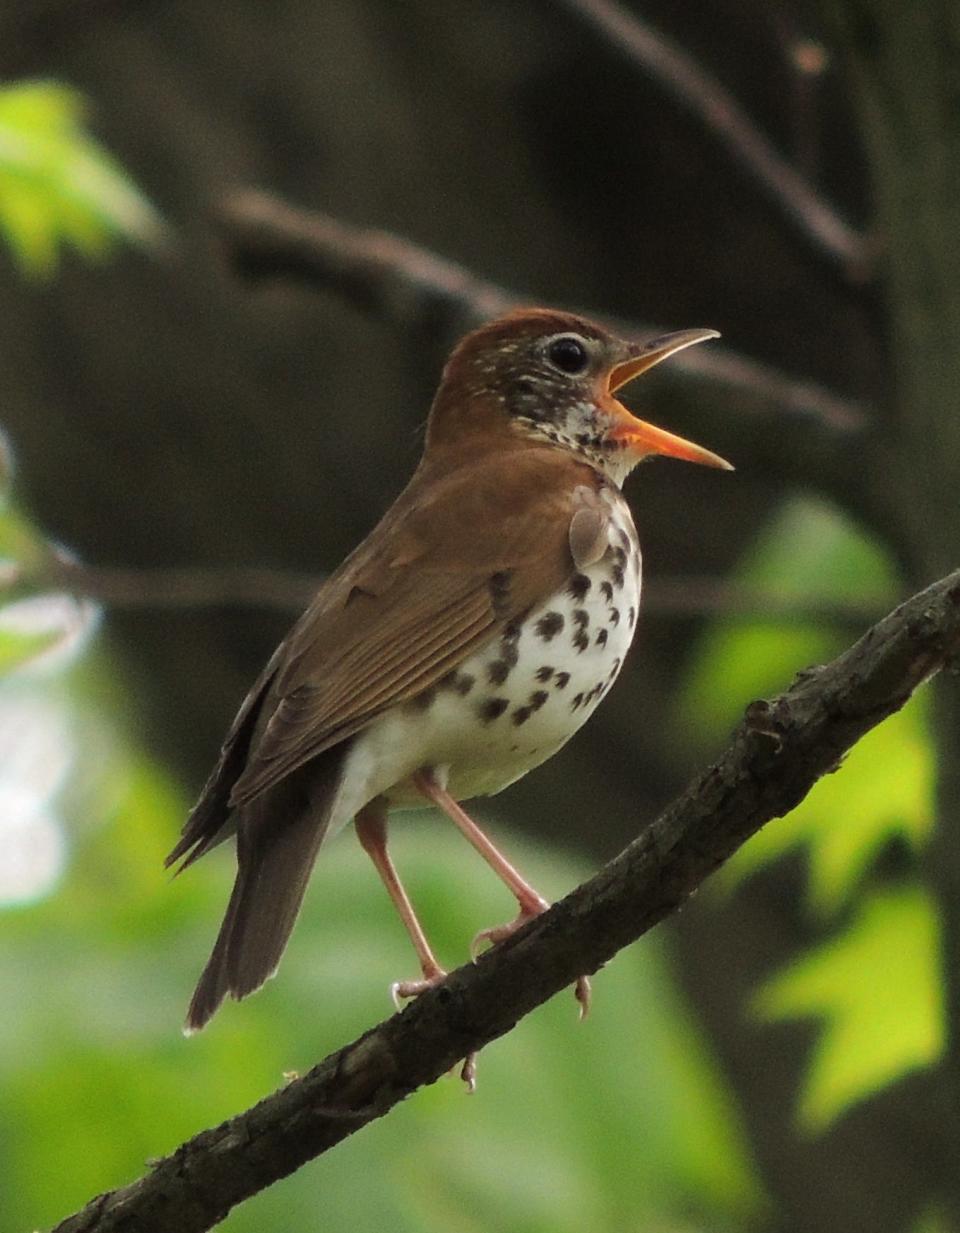 The wood thrush is Washington D.C.'s bird.